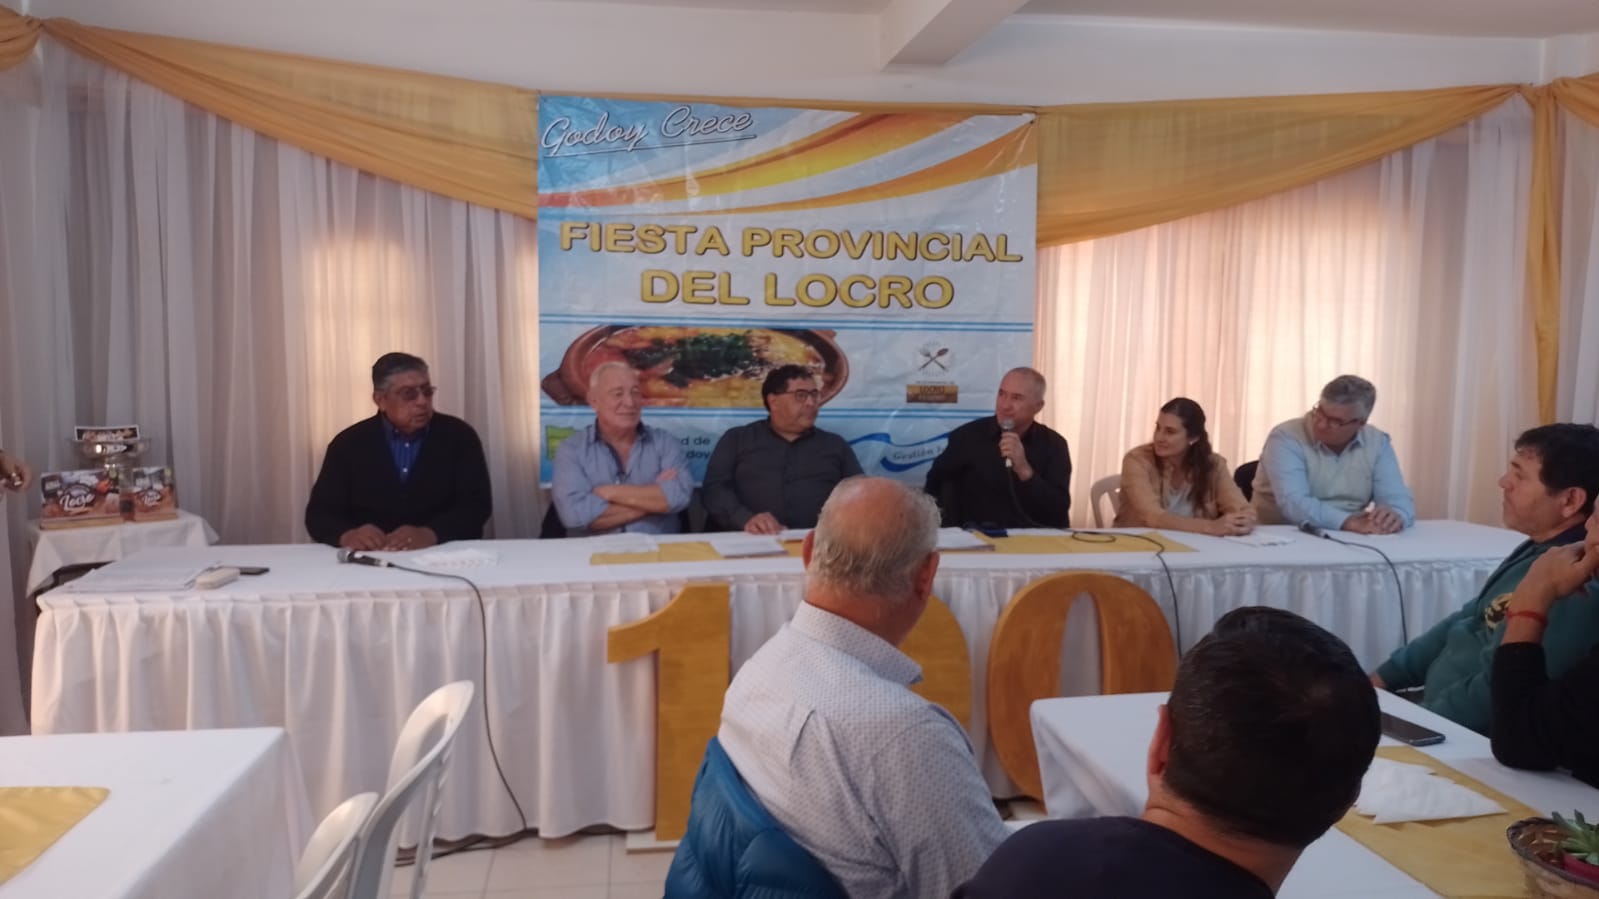 Godoy presentó la VII Edición de la Fiesta Provincial del Locro